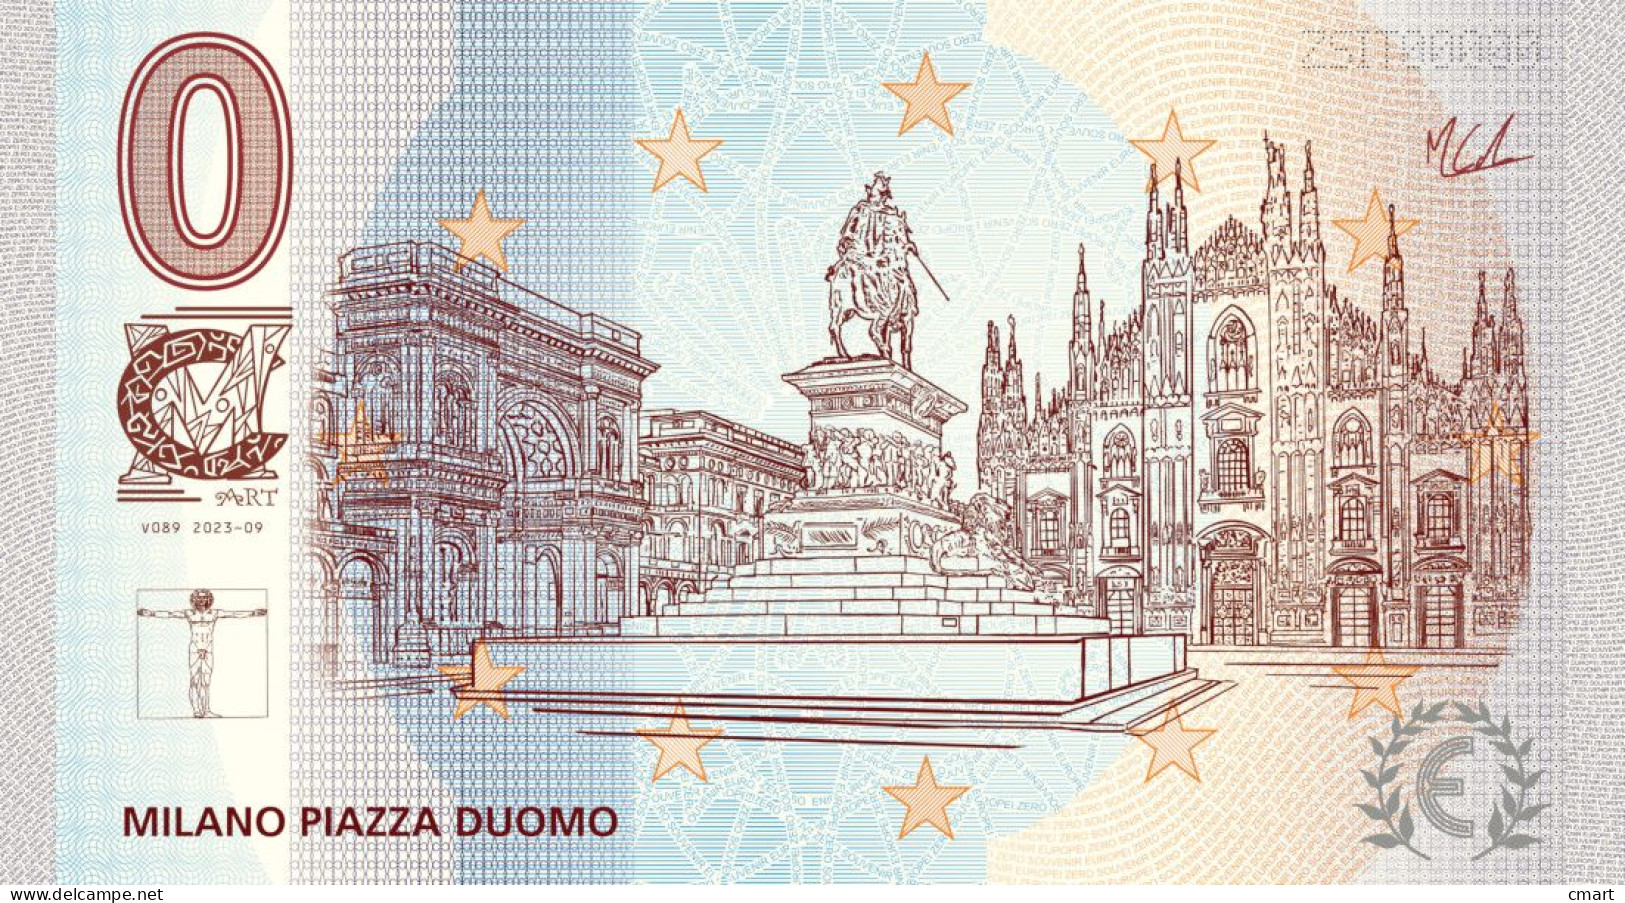 Banconota Zero Euro Souvenir  "CMART" Ricordo Della Città Di Milano Piazza Del Duomo - Sonstige – Europa